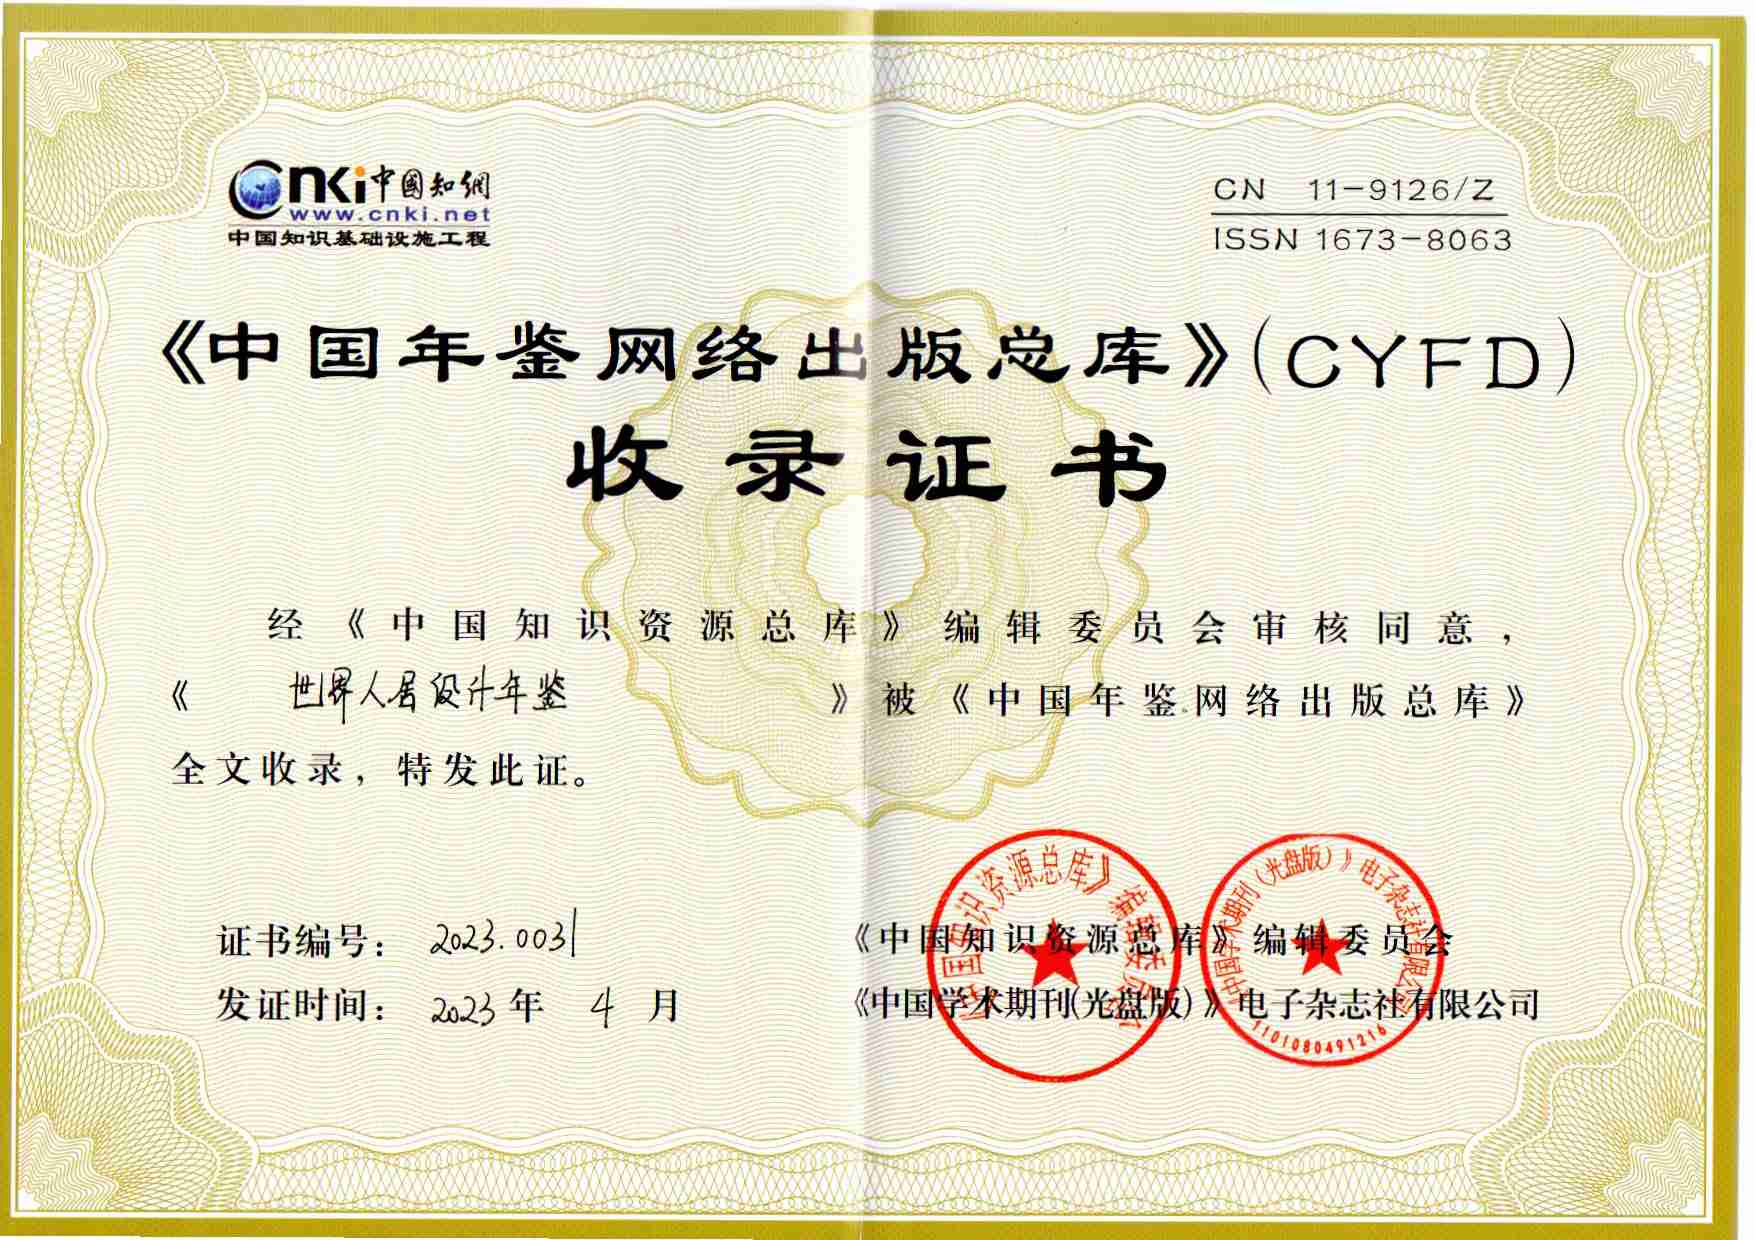 《世界人居设计年鉴》中国知网收录证书